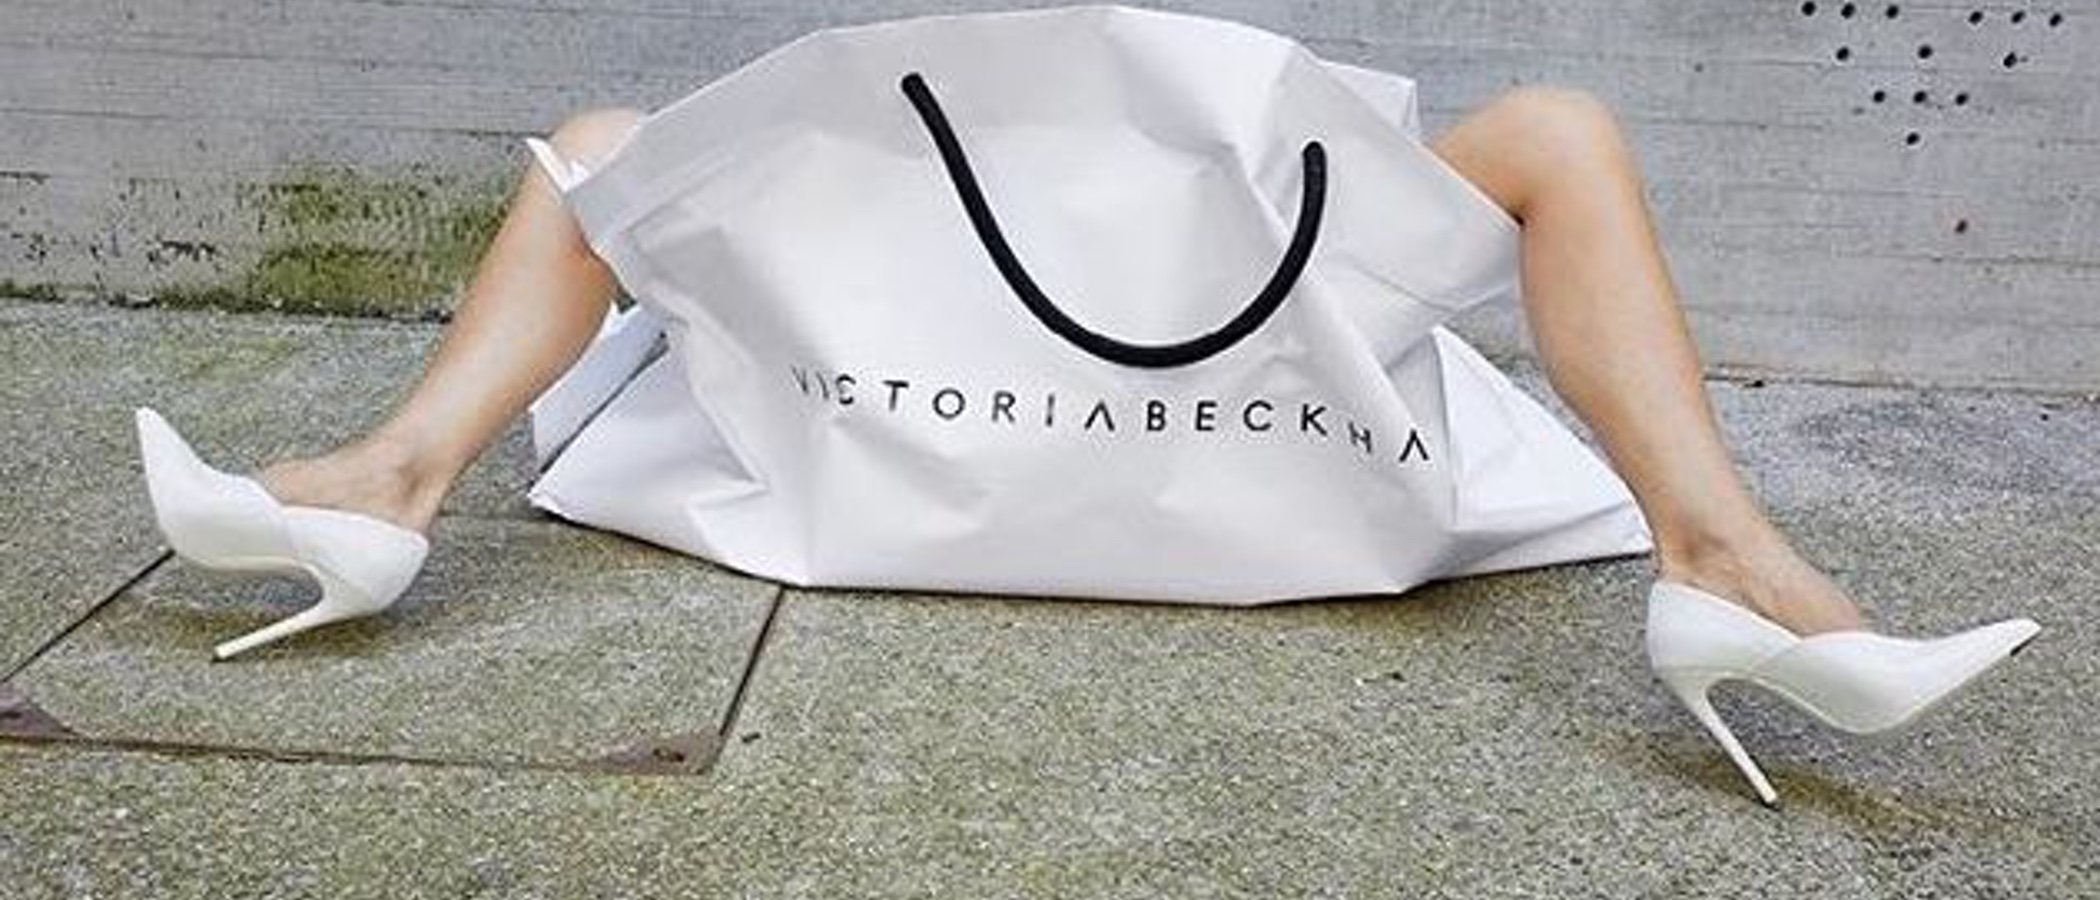 Victoria Beckham celebra los 10 años de su marca de una forma muy curiosa